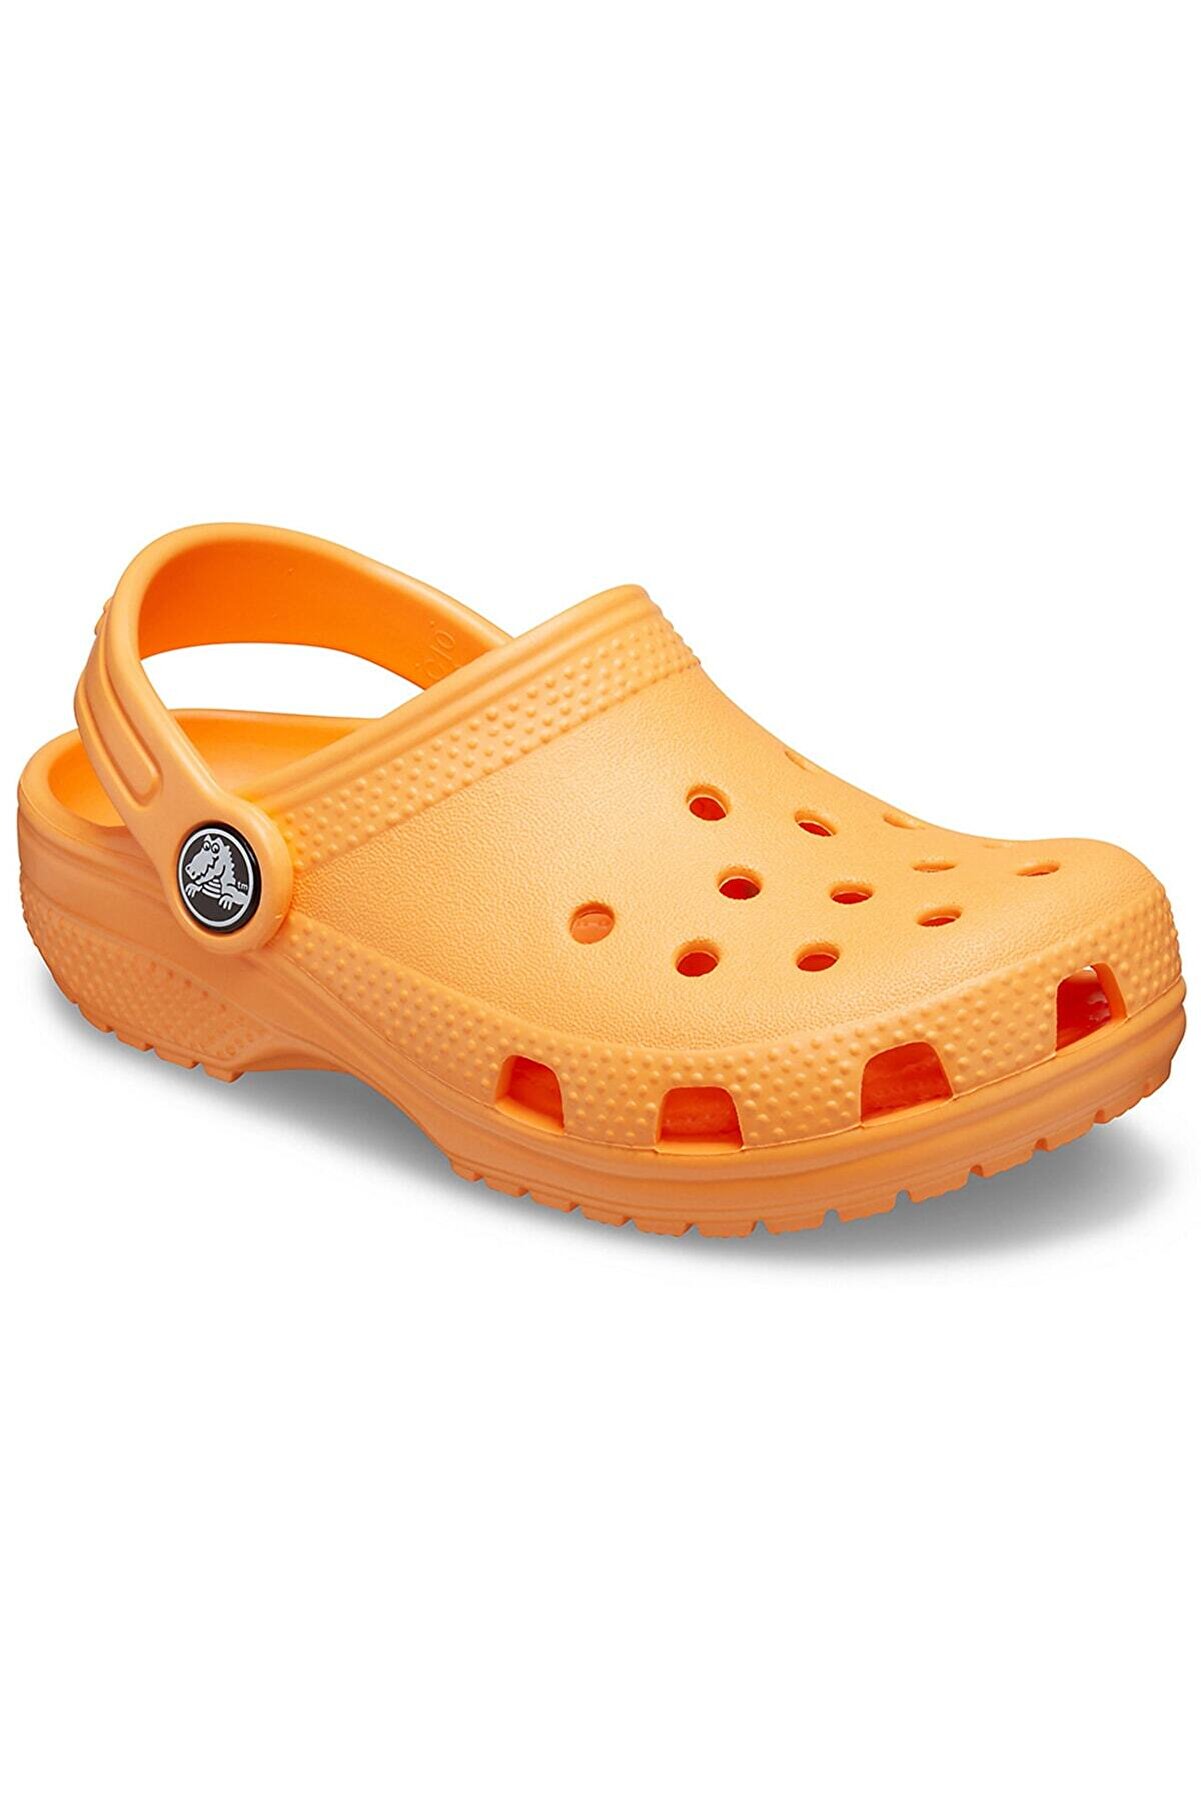 Crocs Turuncu Unisex Çocuk Spor Sandalet